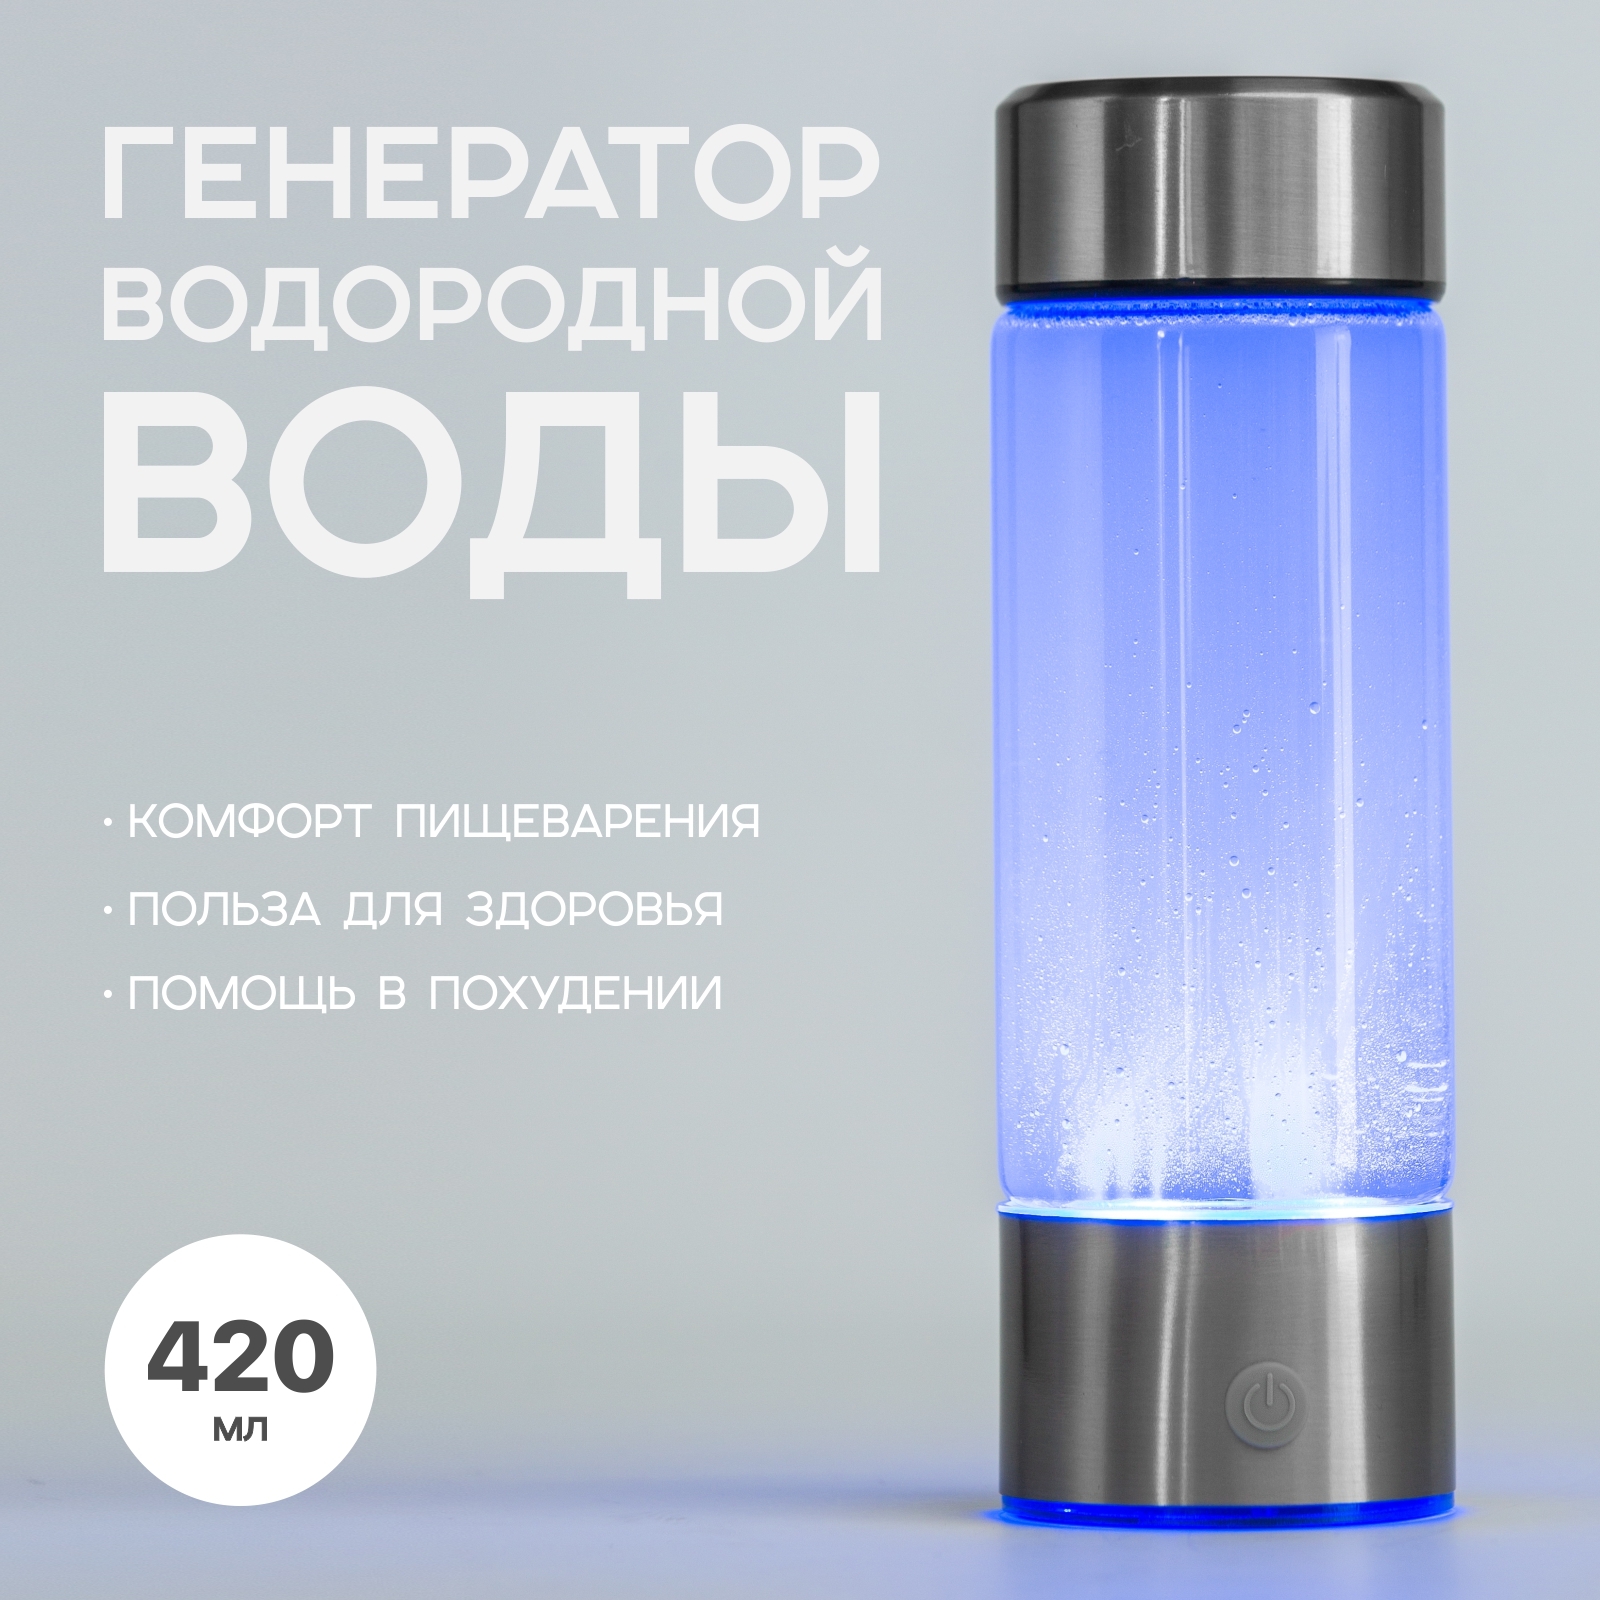 Водородная бутылка генератор. Бутылка для генератора водородной воды. Бутылка для водородной воды Hydrofit hb001. Генератор водородной воды le-1707. Генератор водородной воды ионизатор 2000 мл.